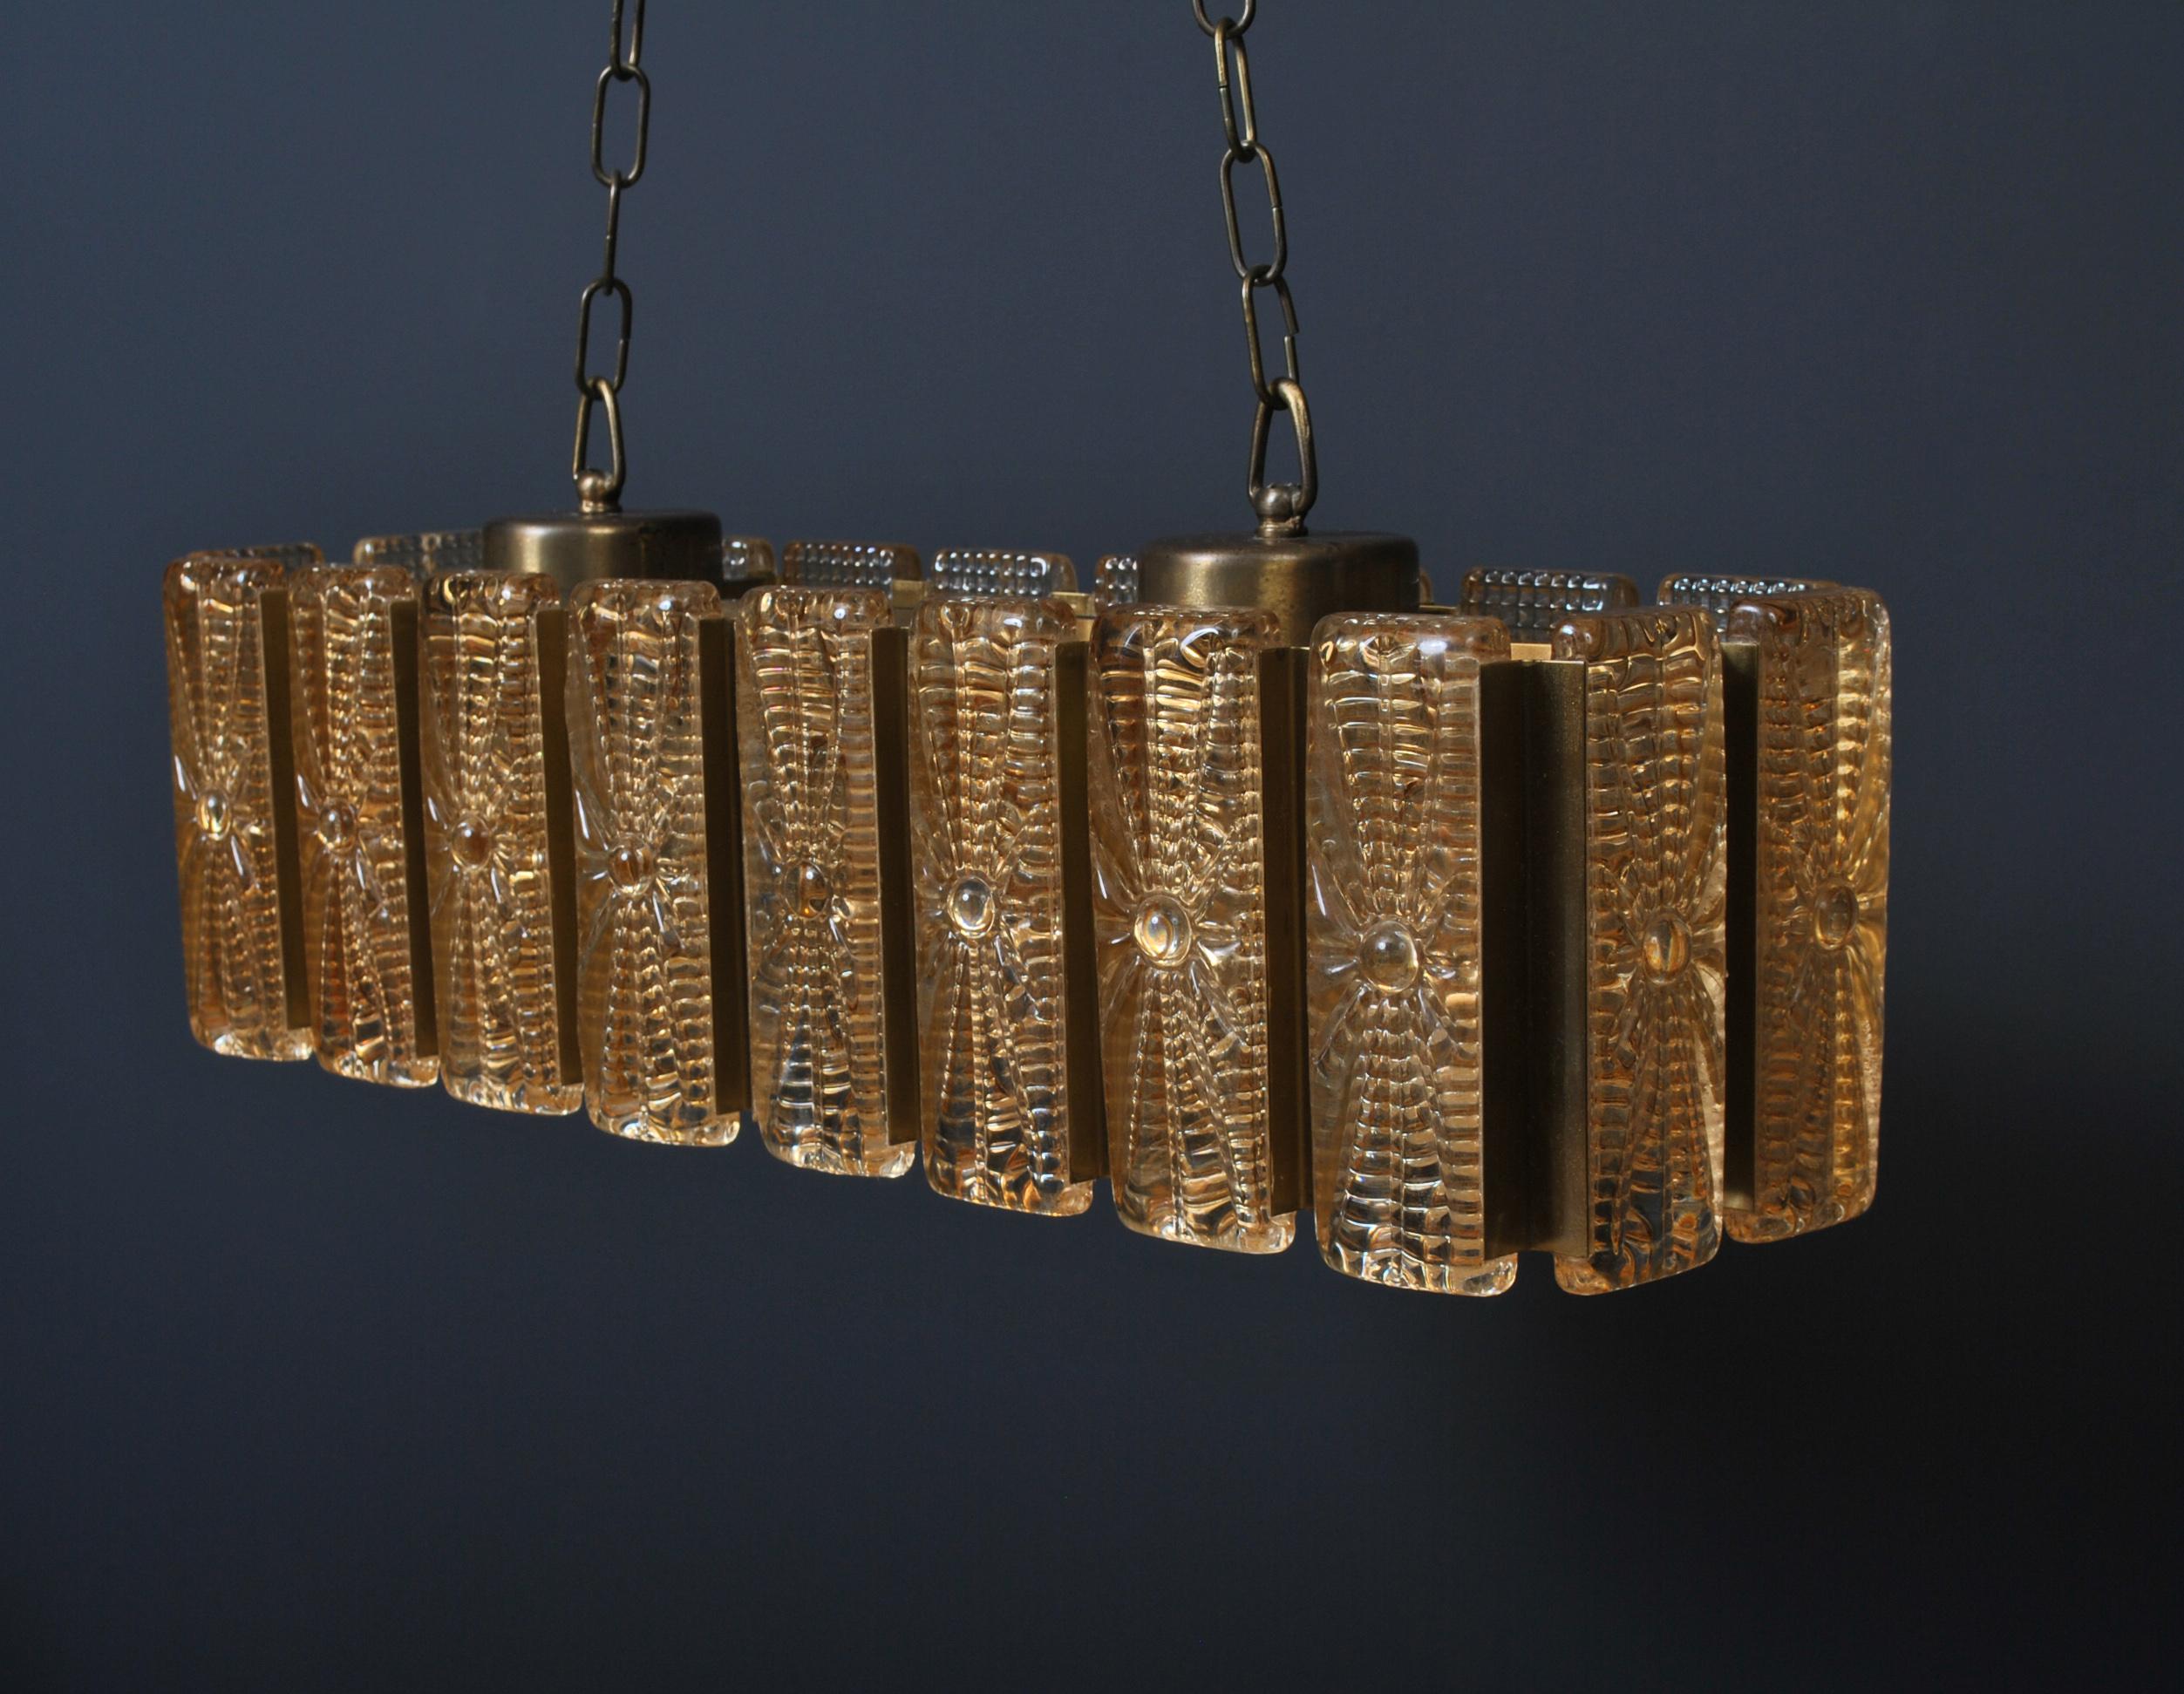 Luminaire suspendu rectangulaire en verre et laiton par Vitrika Design, Danemark, vers 1960. Blocs de verre de teinte dorée avec des cylindres en verre transparent coupés à l'intérieur. La hauteur actuelle avec la chaîne est de 110 cm mais peut être